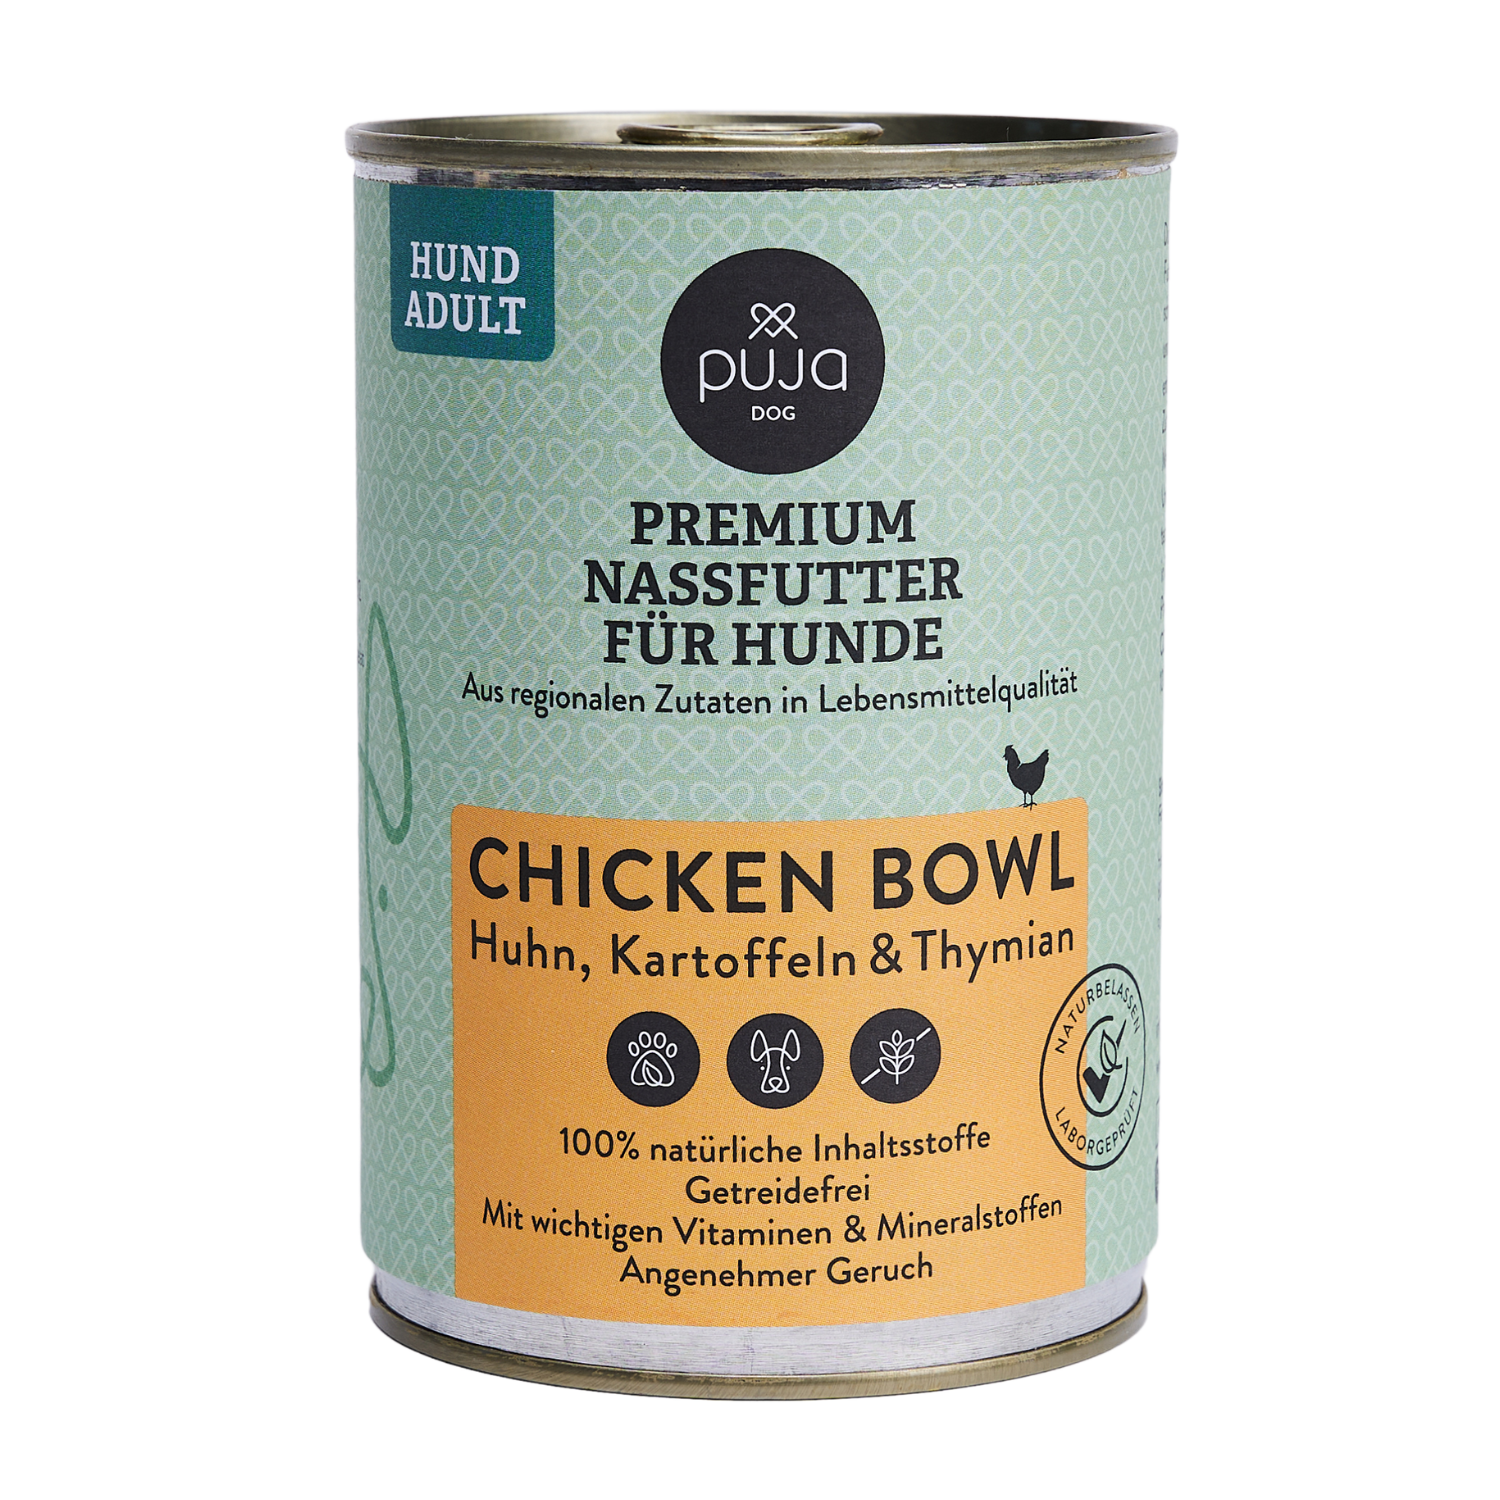 Premium Nassfutter für Hunde - feine Chicken Bowl 400g